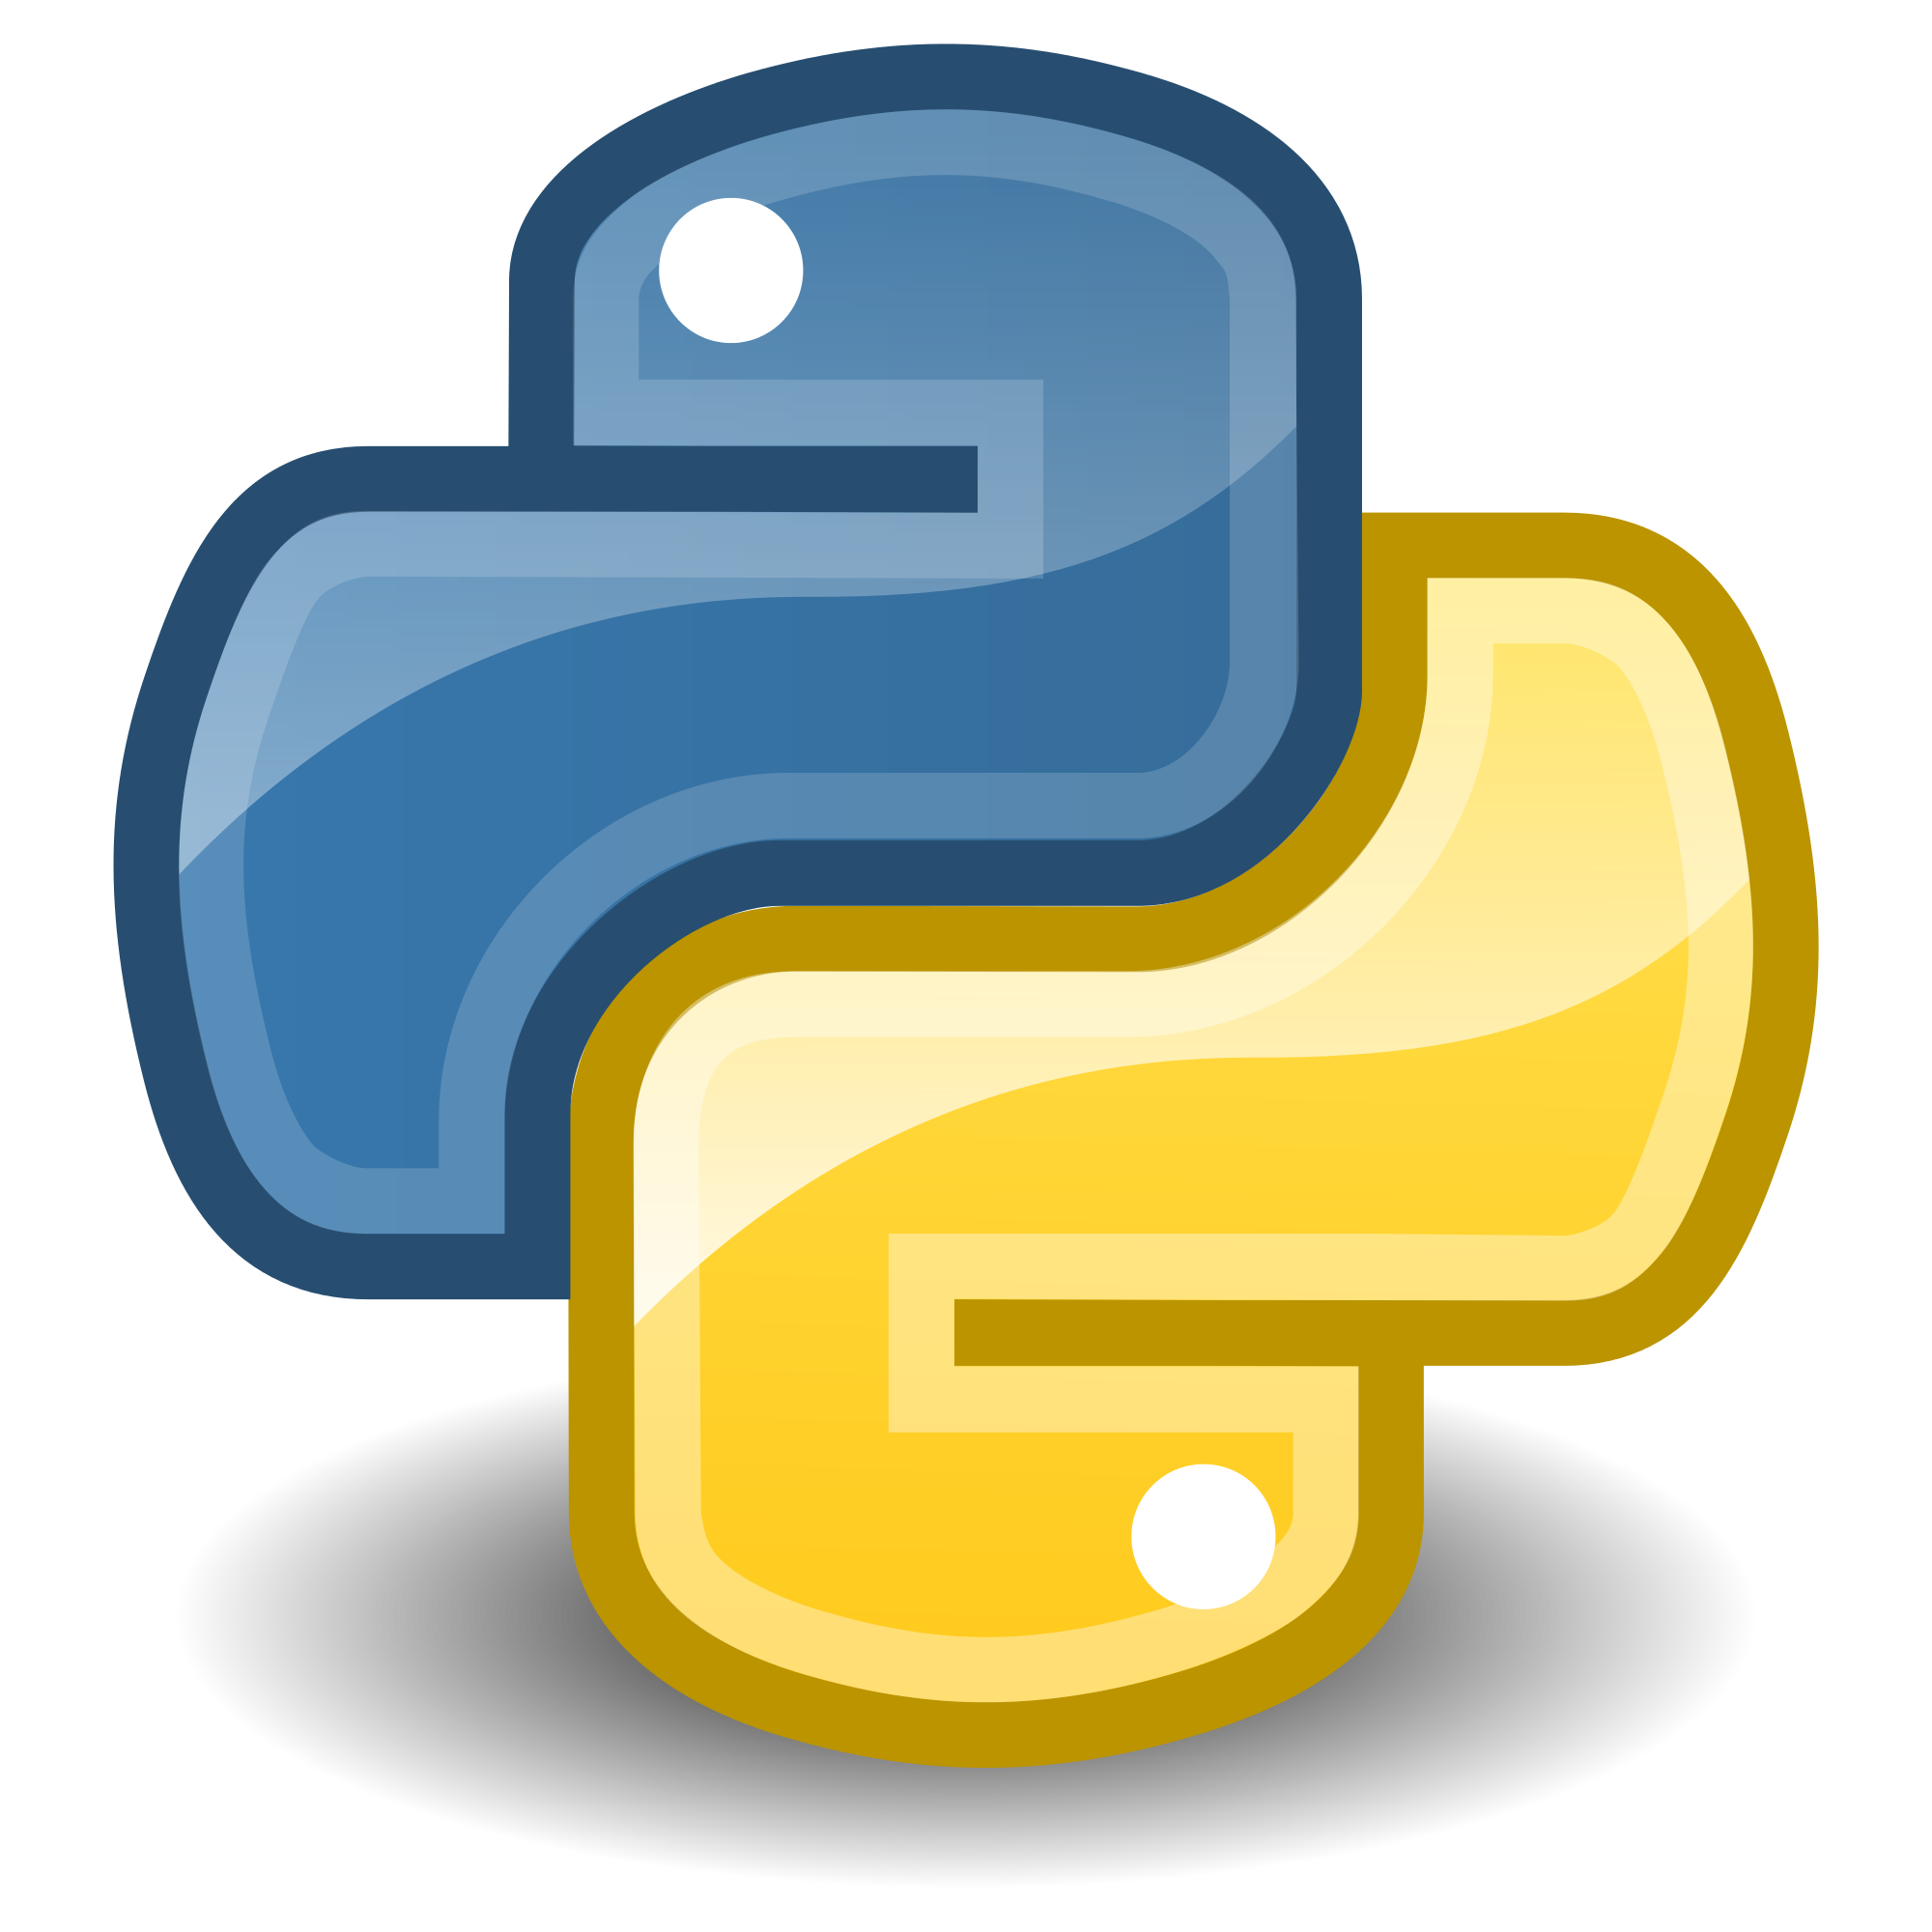 Python Logo Png Image PNG Ima